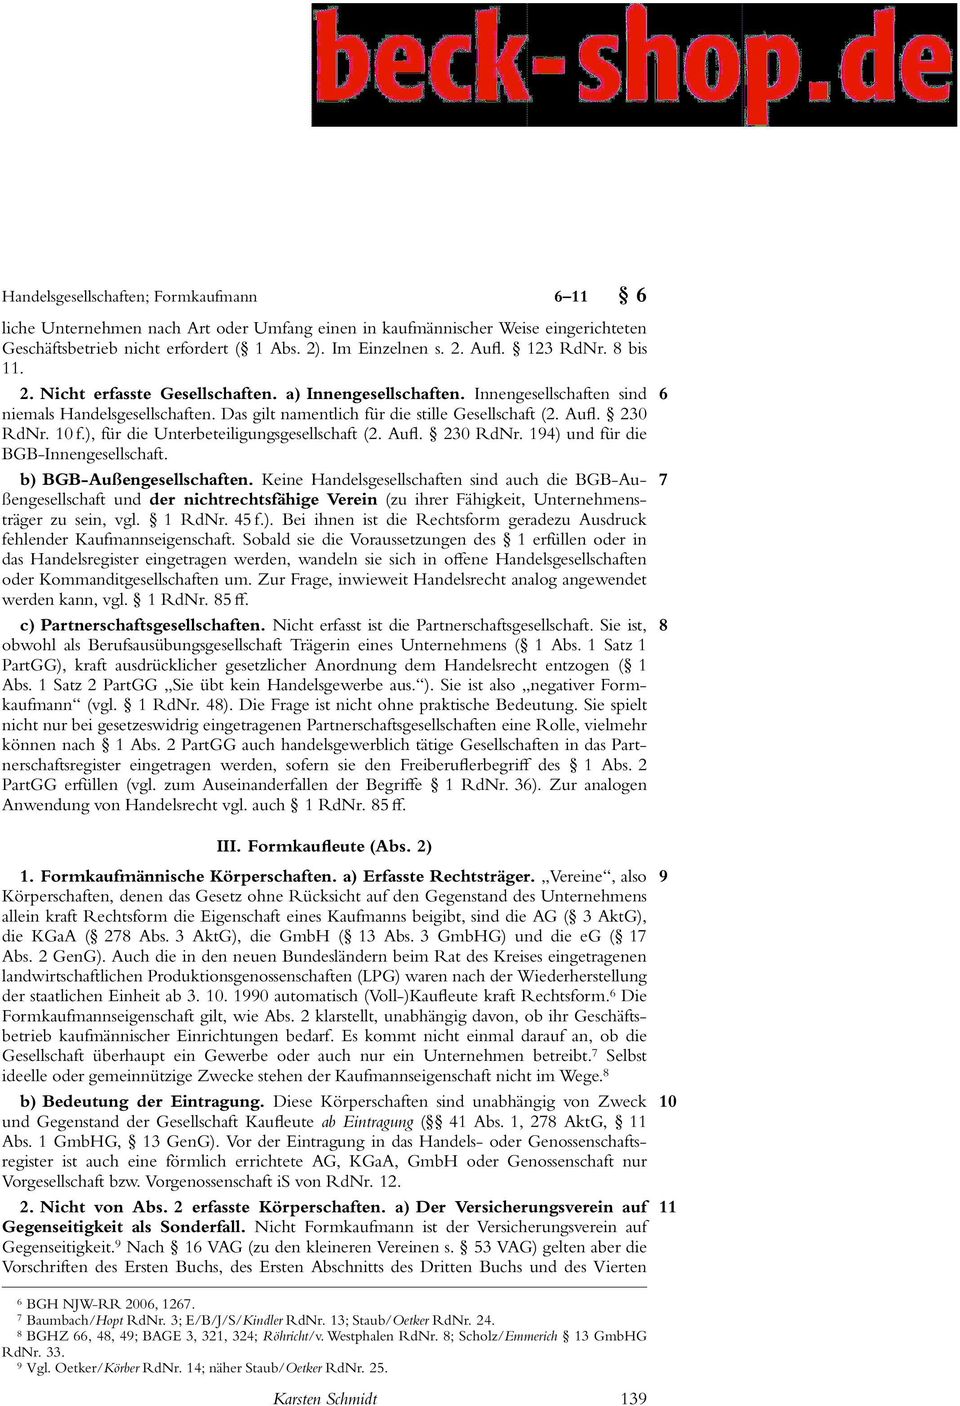 230 RdNr. 10 f.), für die Unterbeteiligungsgesellschaft (2. Aufl. 230 RdNr. 194) und für die BGB-Innengesellschaft. b) BGB-Außengesellschaften.